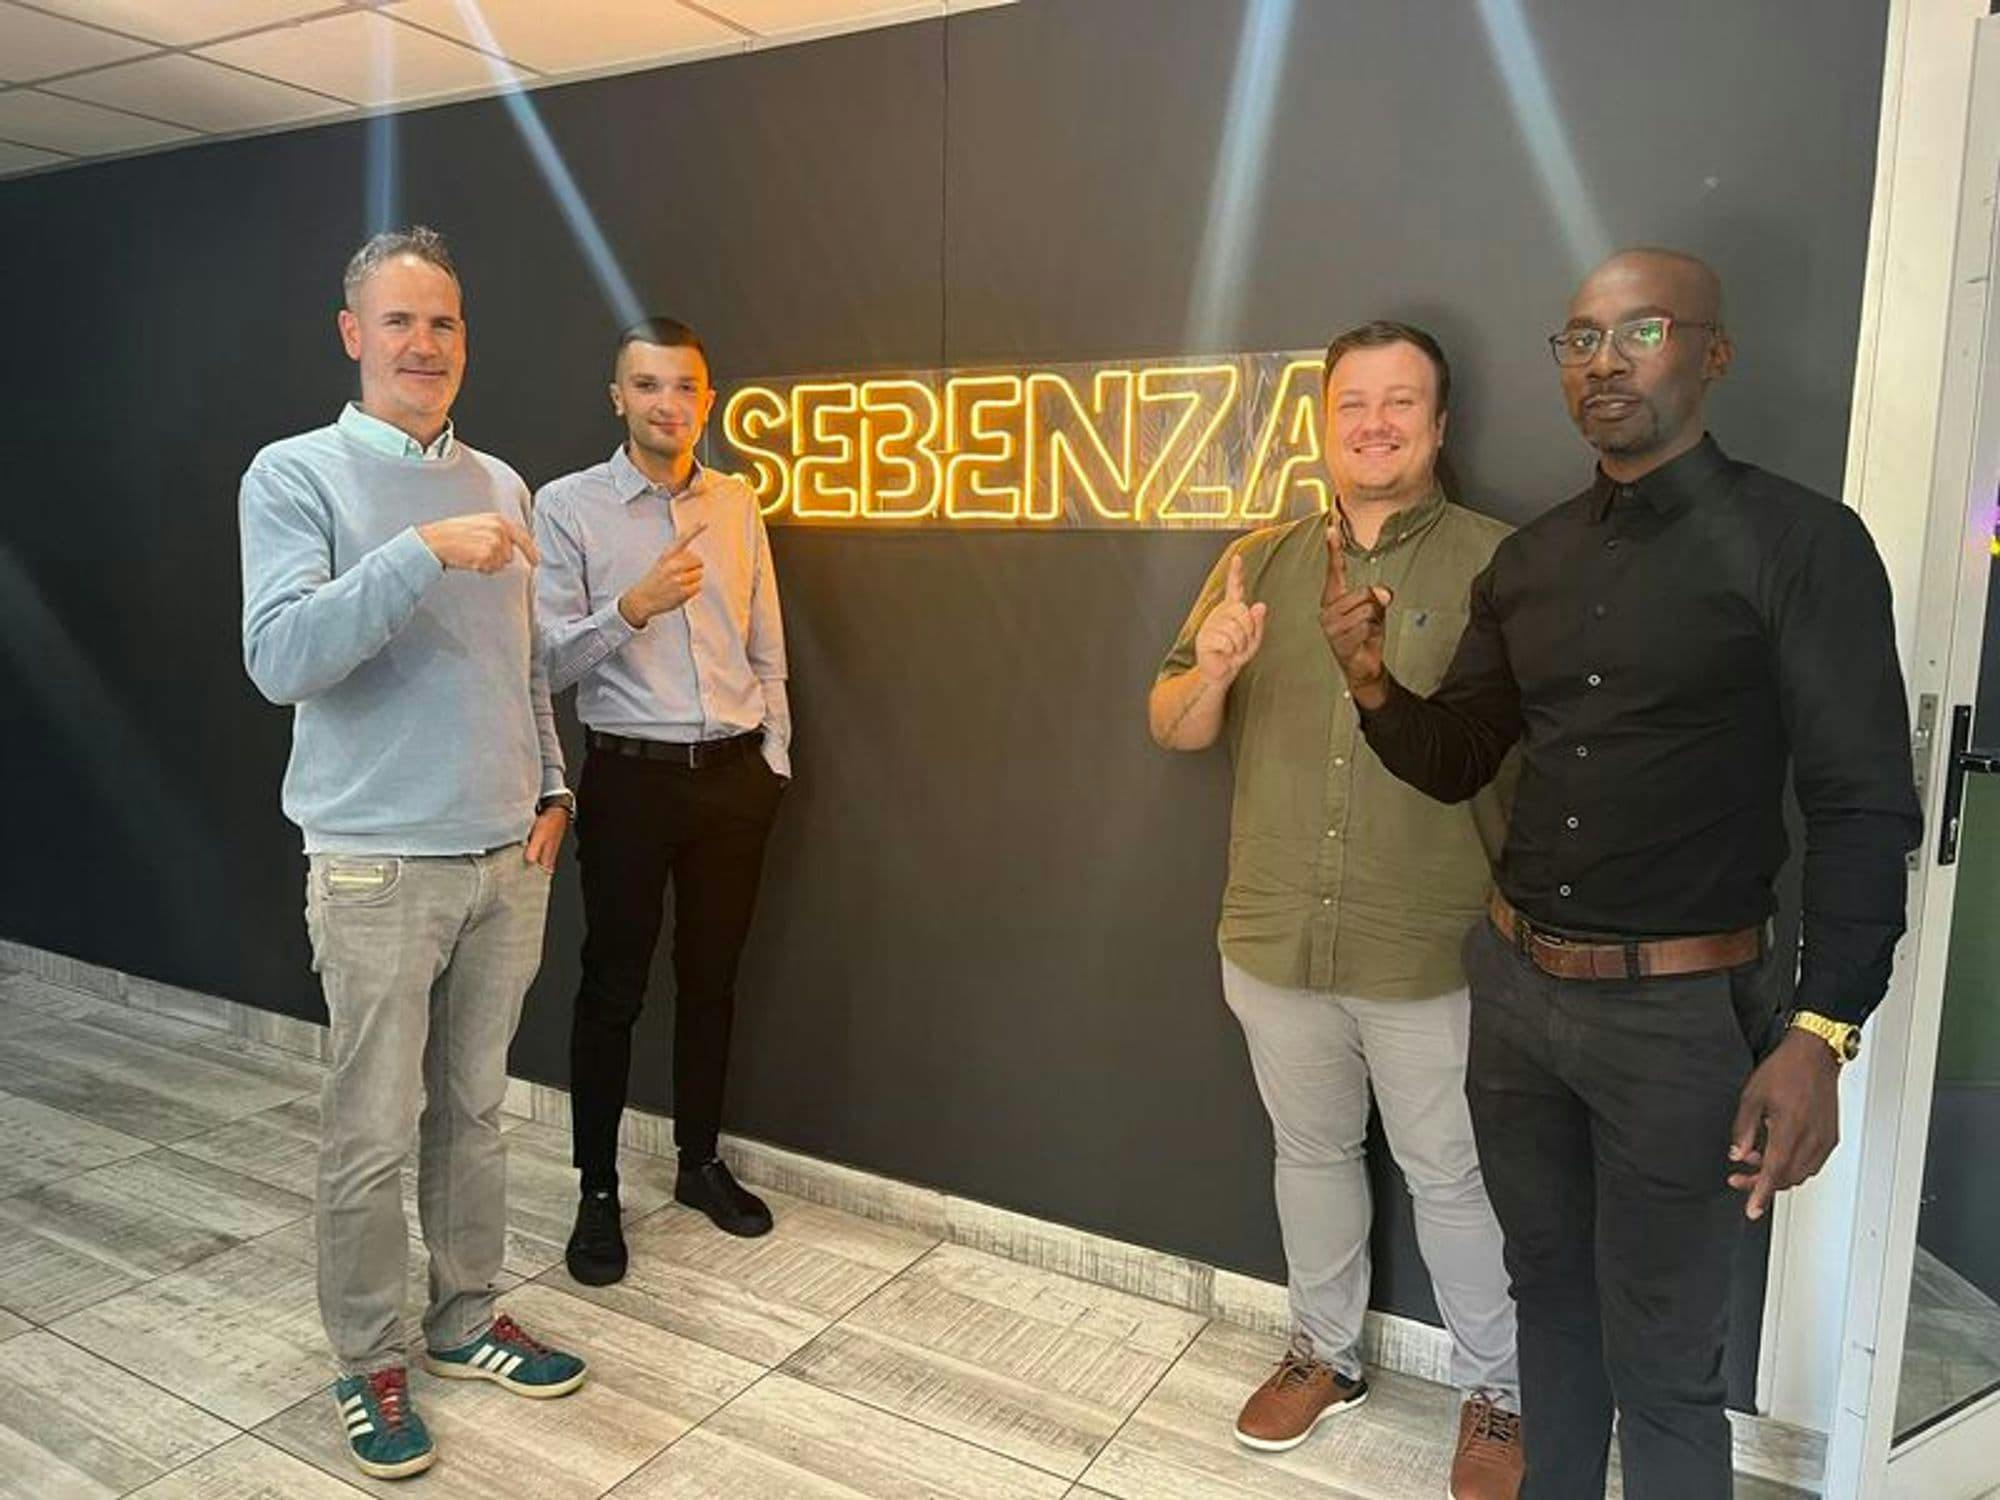 Trinity IoT's Wayne meets with Sebenza